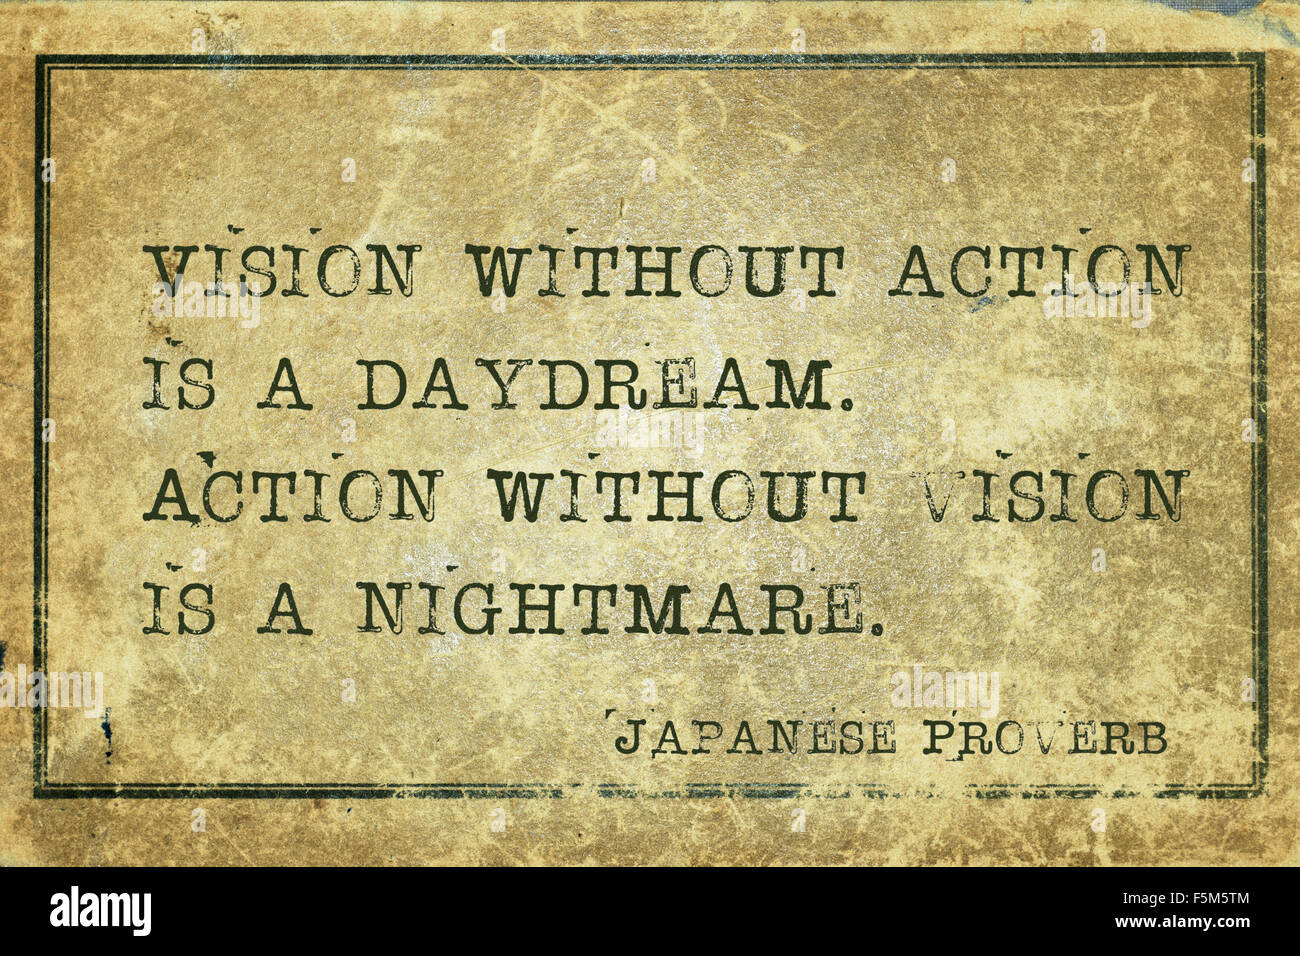 Visione senza azione è un sogno ad occhi aperti - antico proverbio giapponese stampato su grunge cartone vintage Foto Stock